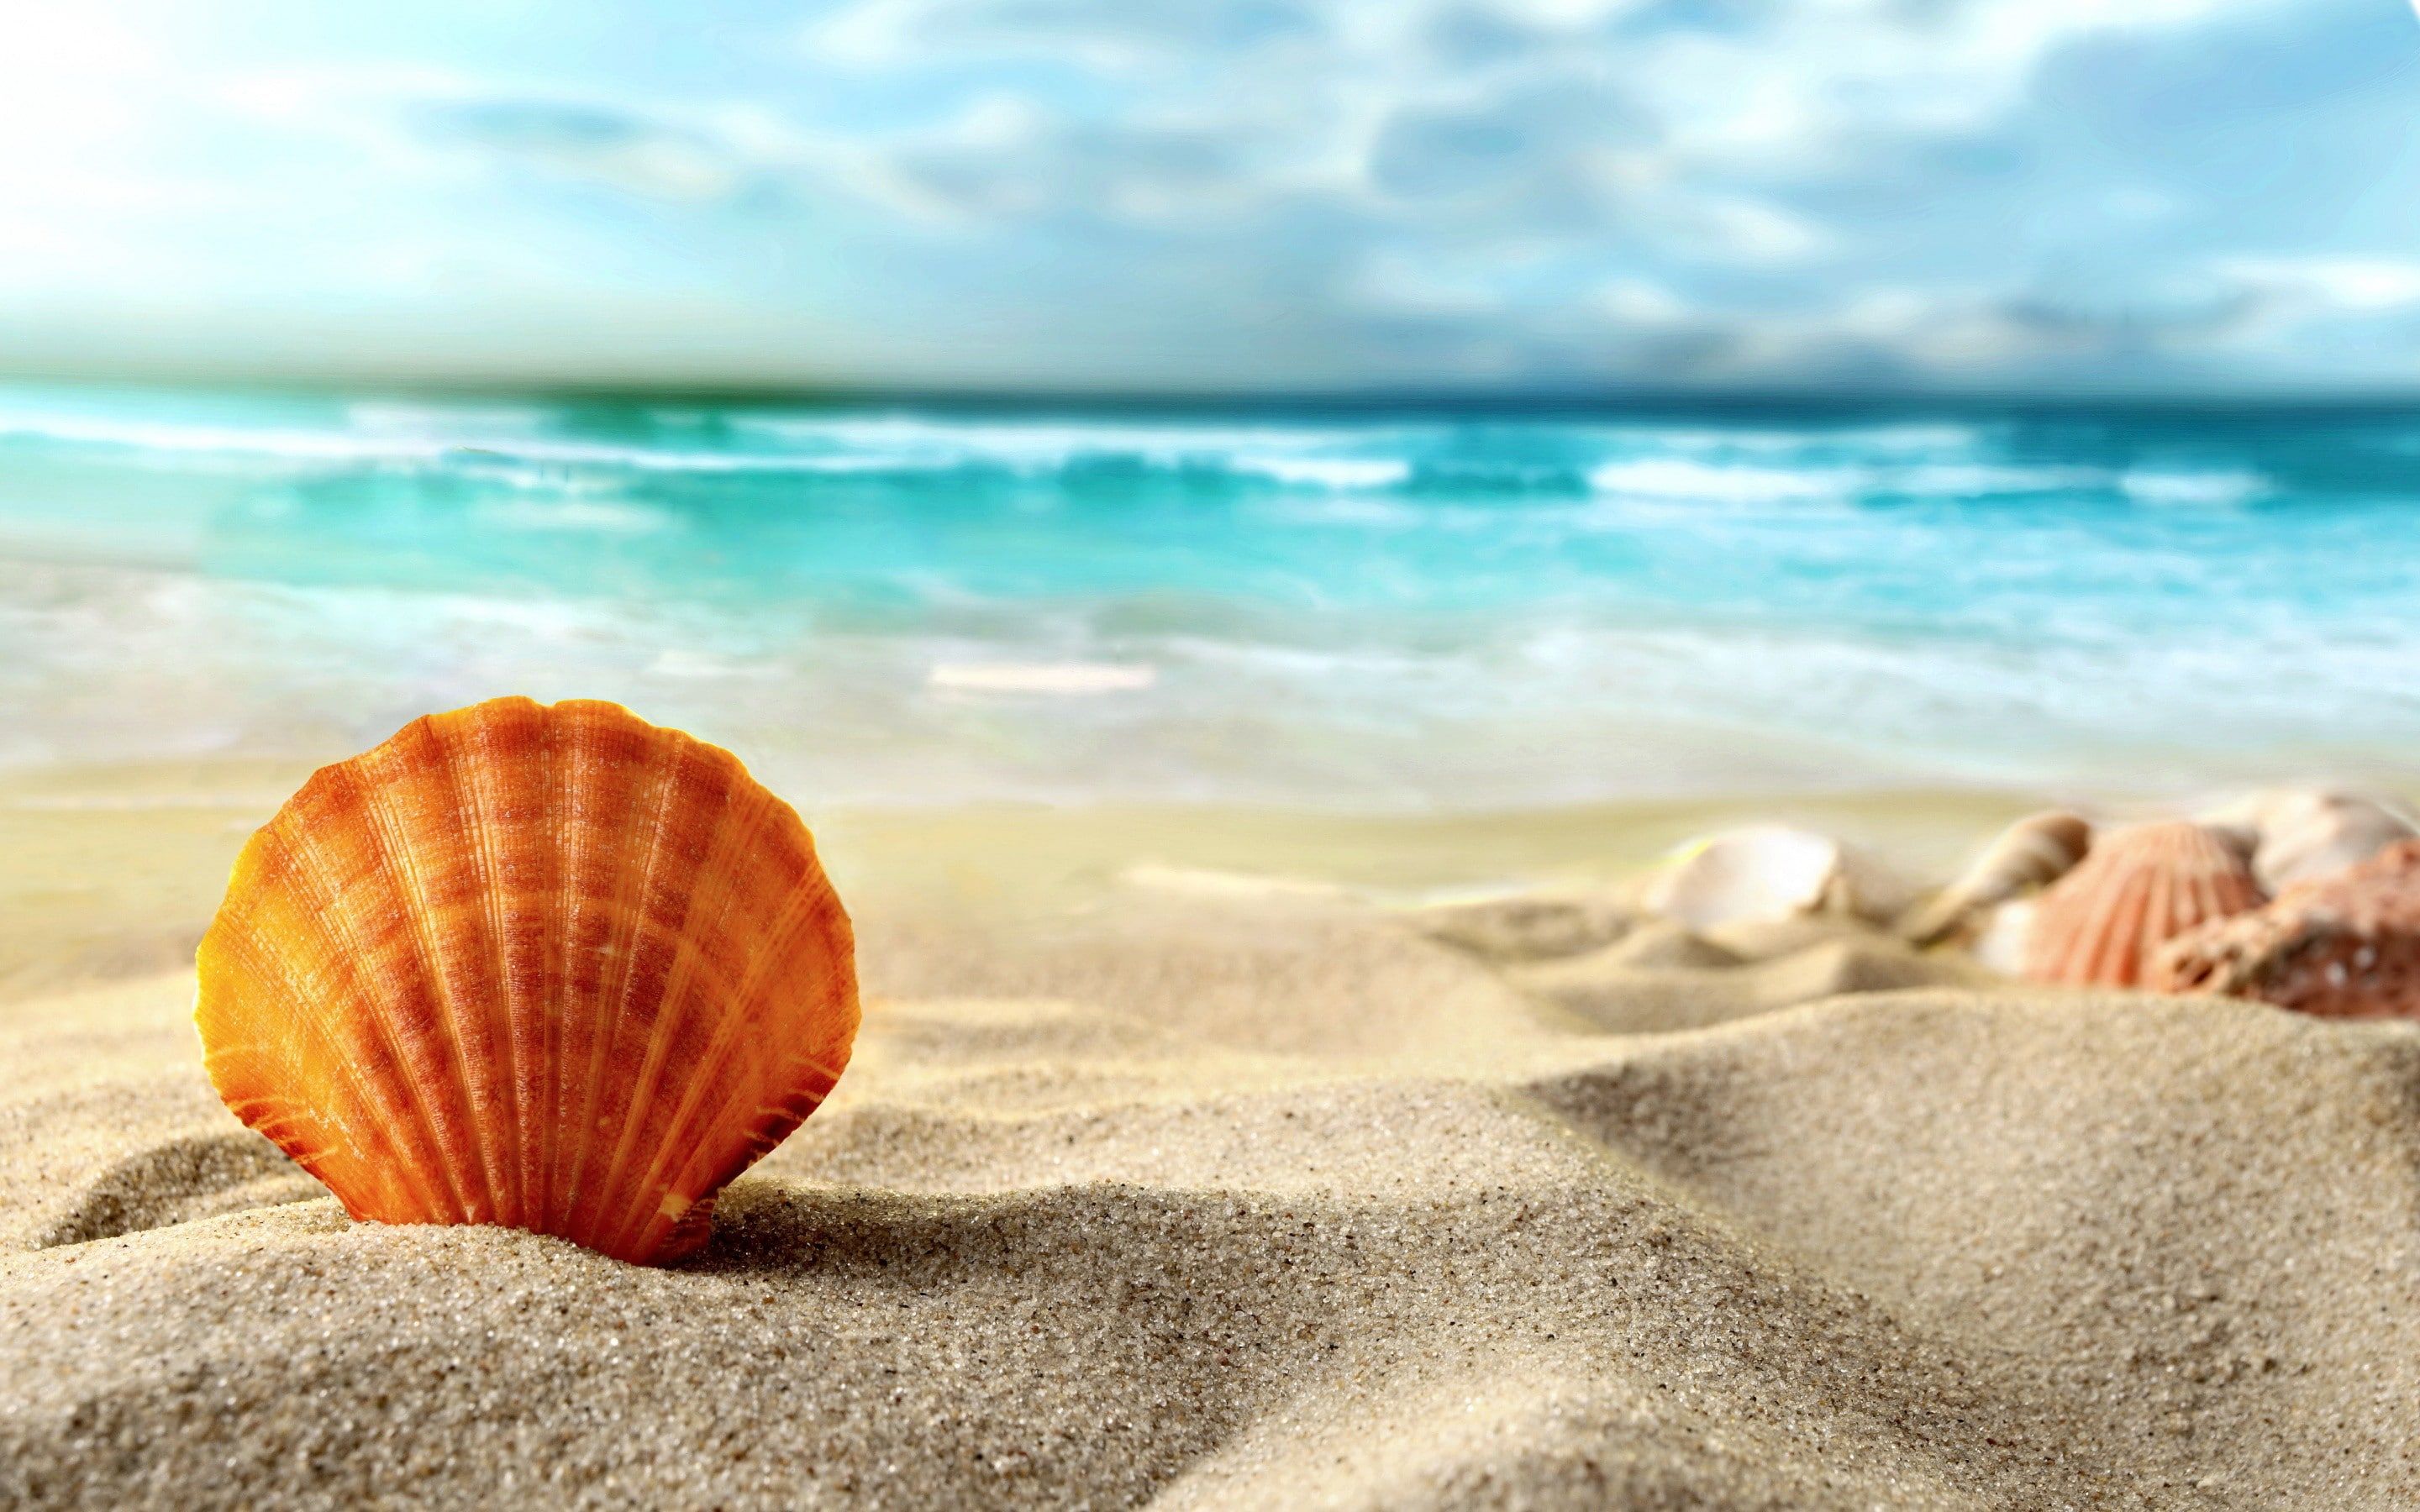 Shell, beach, sea #beach #sand #shell #sea #Summer K #wallpaper #hdwallpaper #desktop. Beach sunset wallpaper, Beach sand, Beach wallpaper